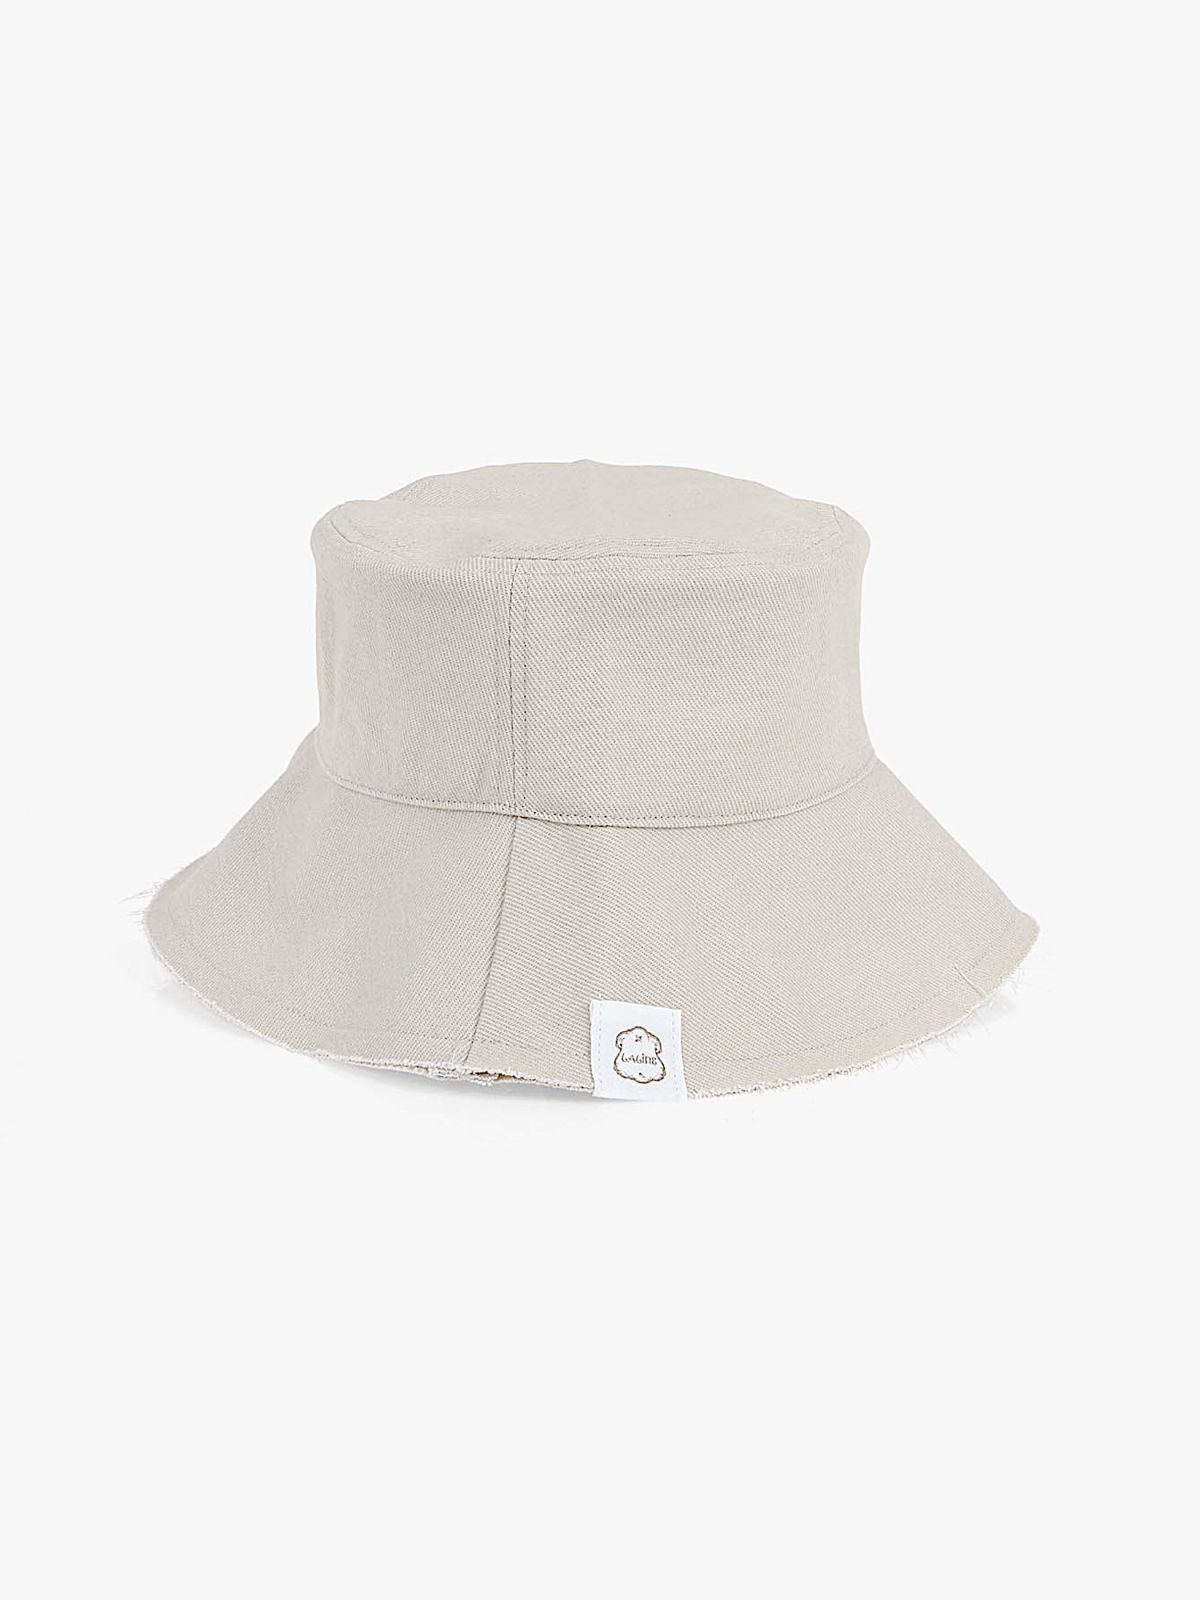  כובע באקט רחב שוליים / נשים של LALINE